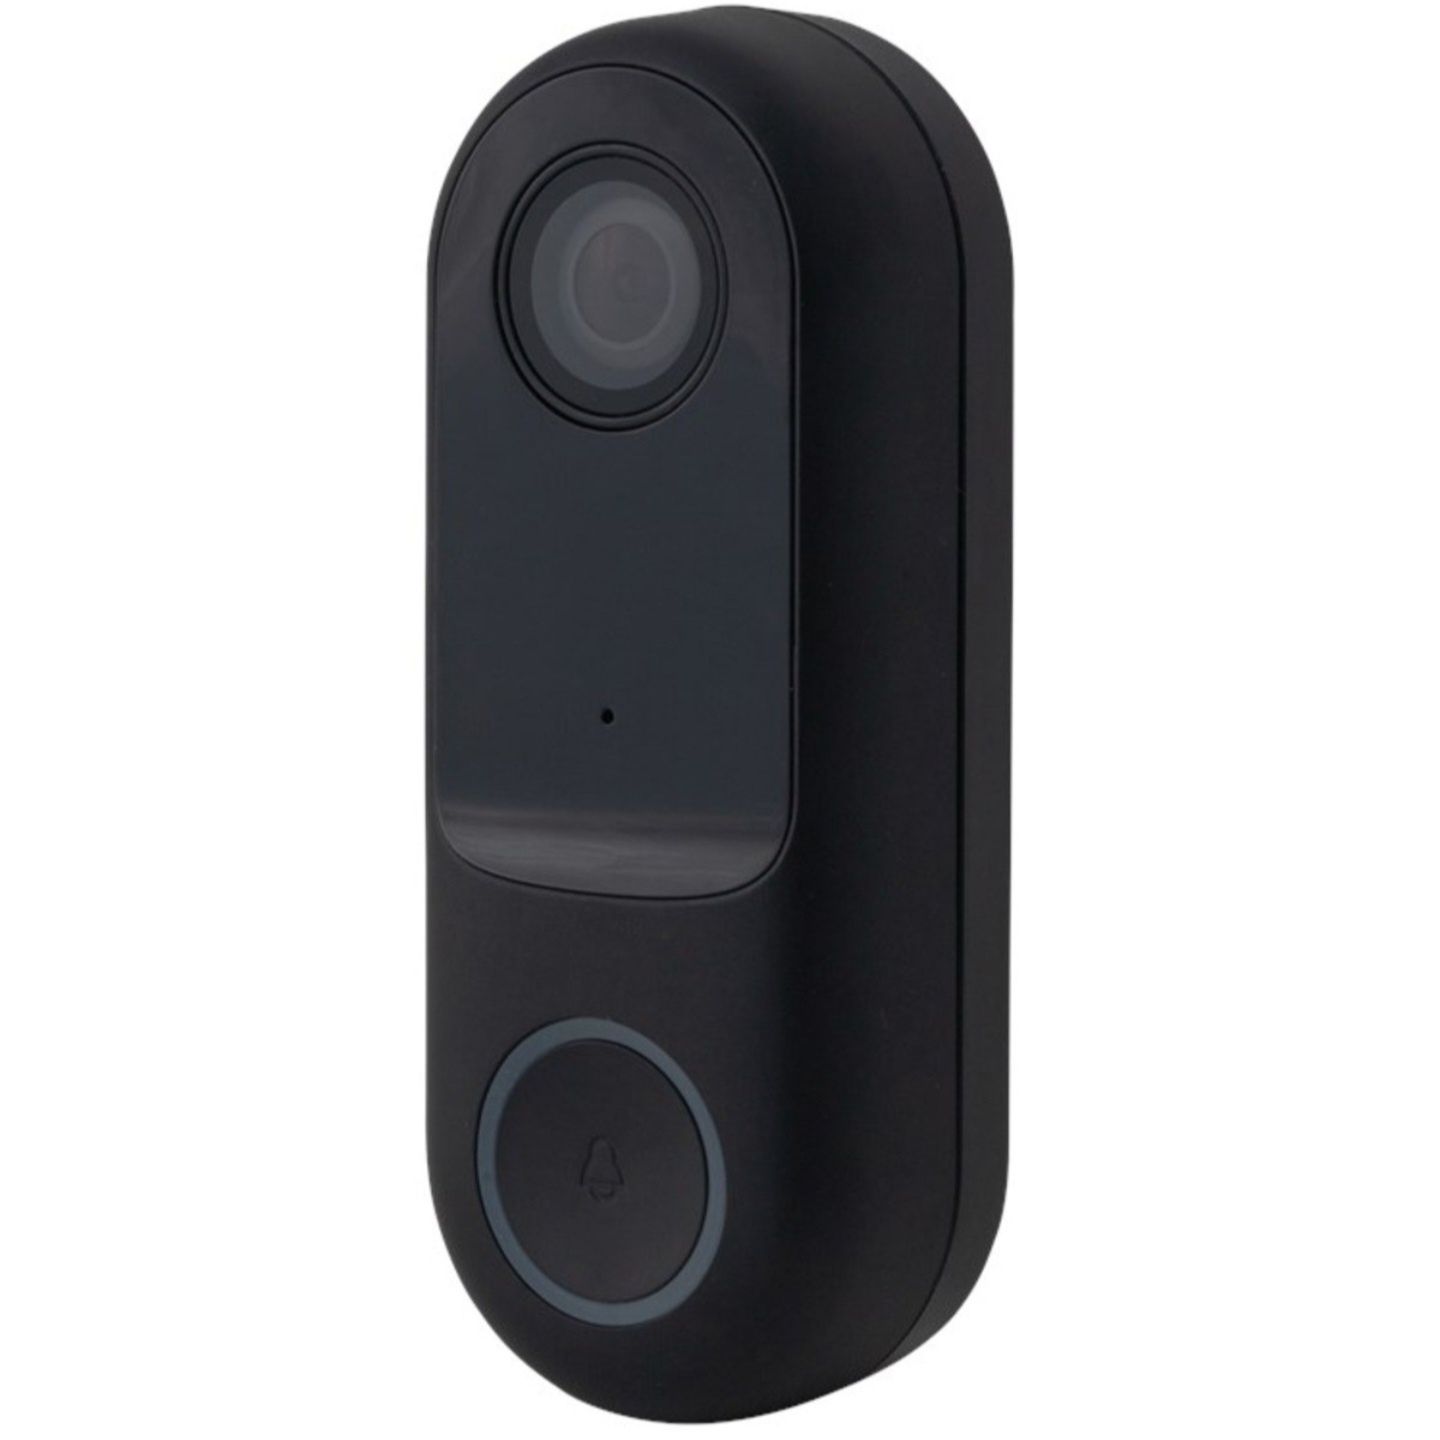 Smart doorbell Sonerie smart cu camera 1080p